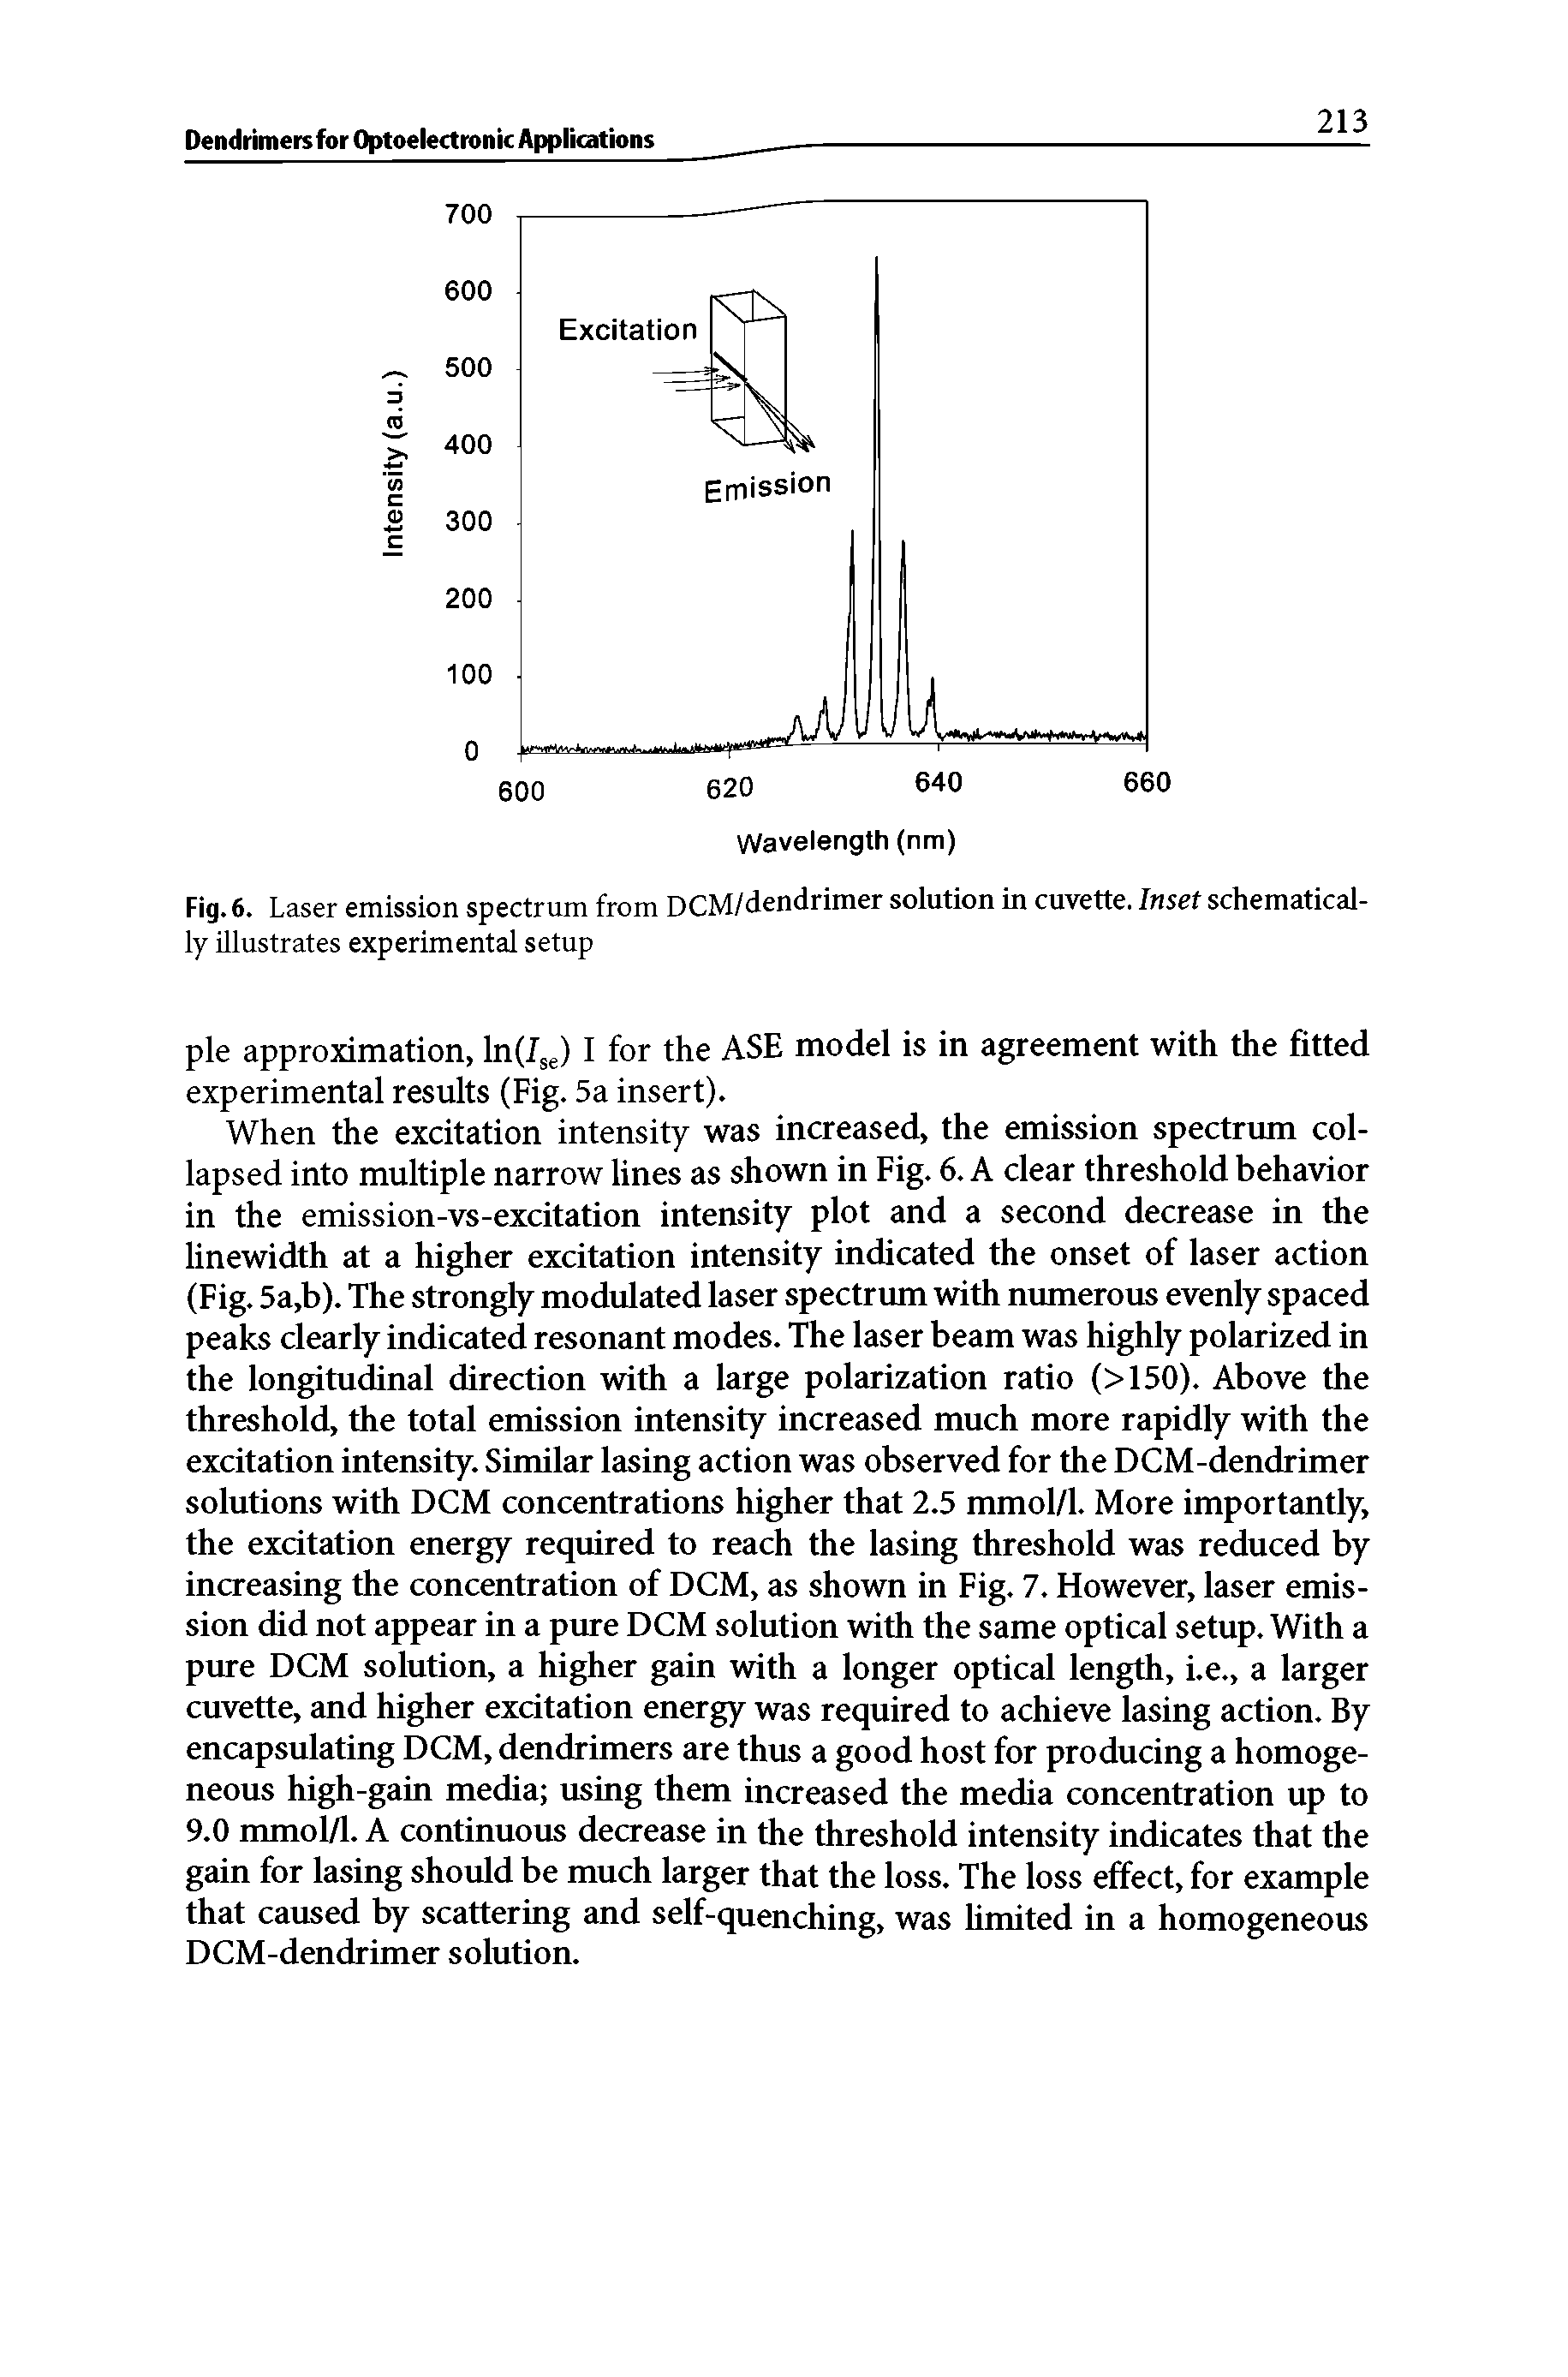 Fig. 6. Laser emission spectrum from DCM/dendrimer solution in cuvette. Inset schematically illustrates experimental setup...